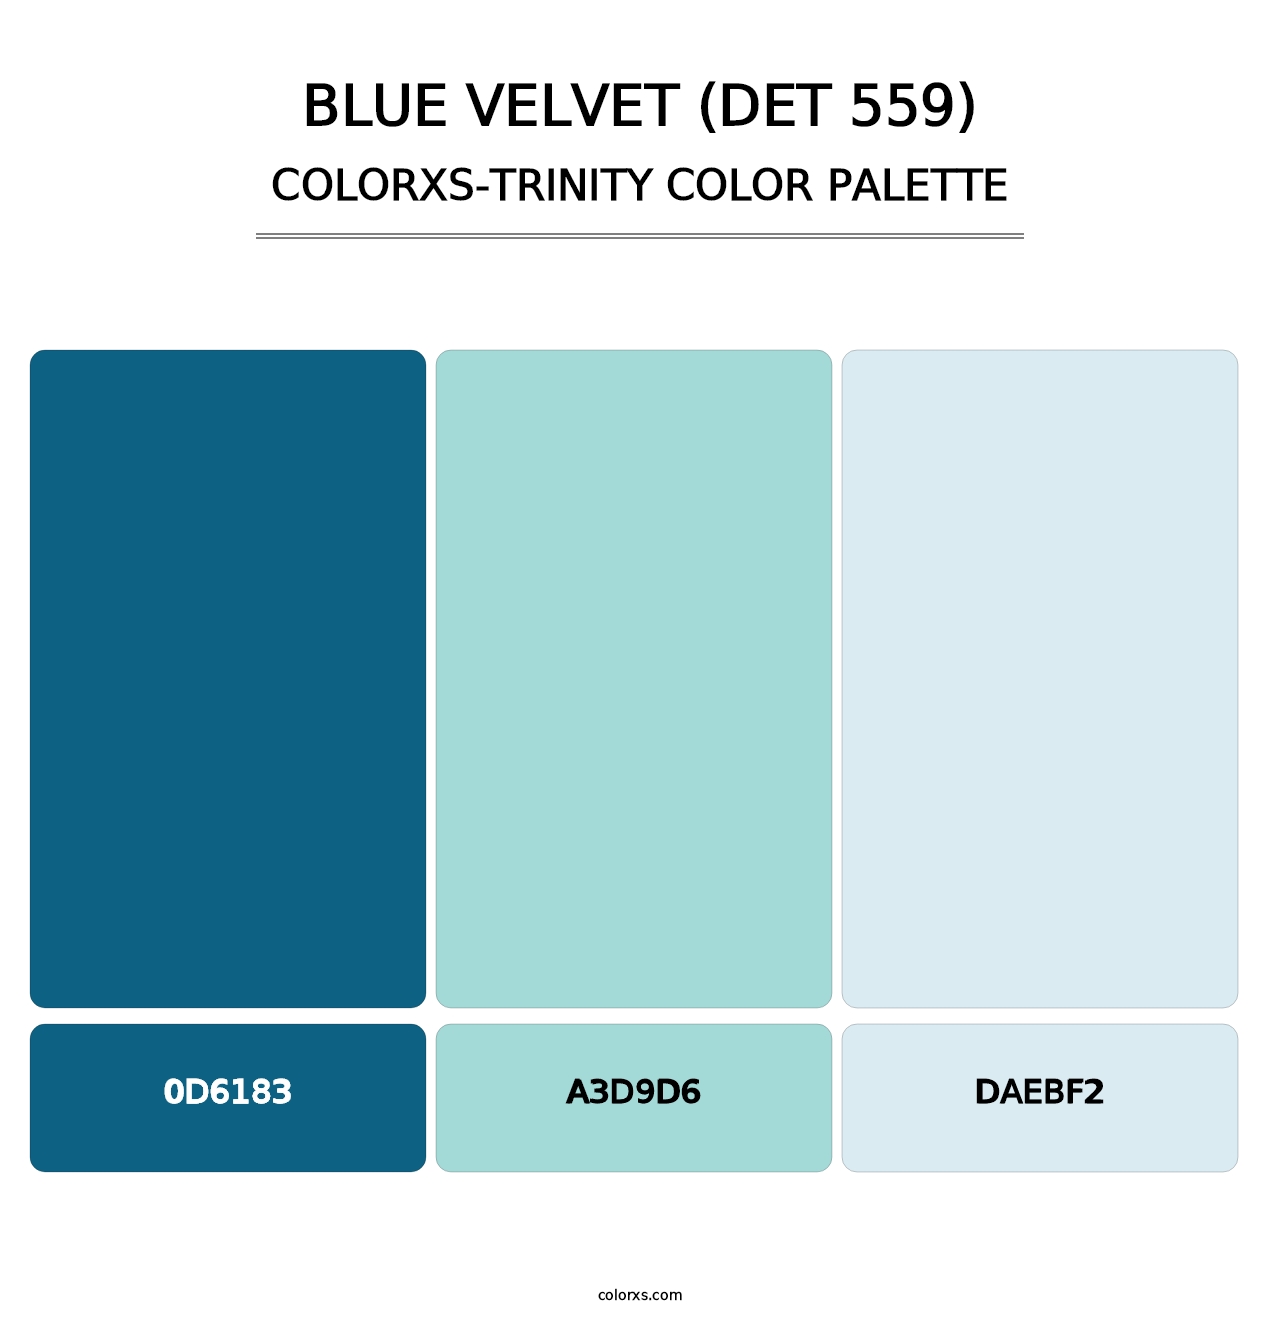 Blue Velvet (DET 559) - Colorxs Trinity Palette